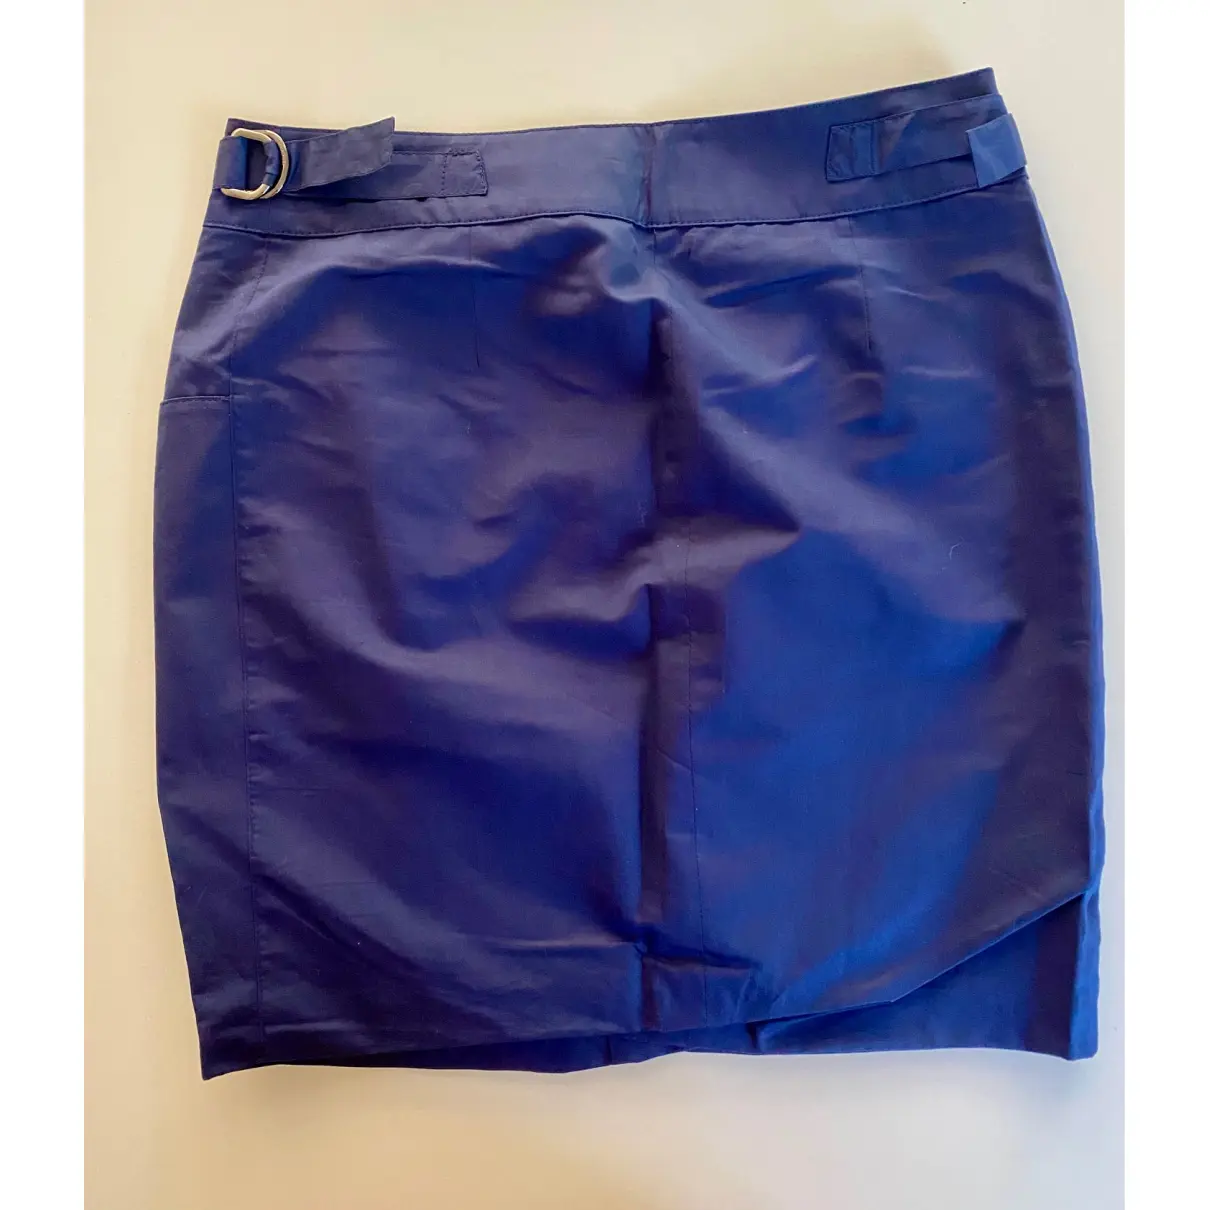 Buy Emilio Pucci Mini skirt online